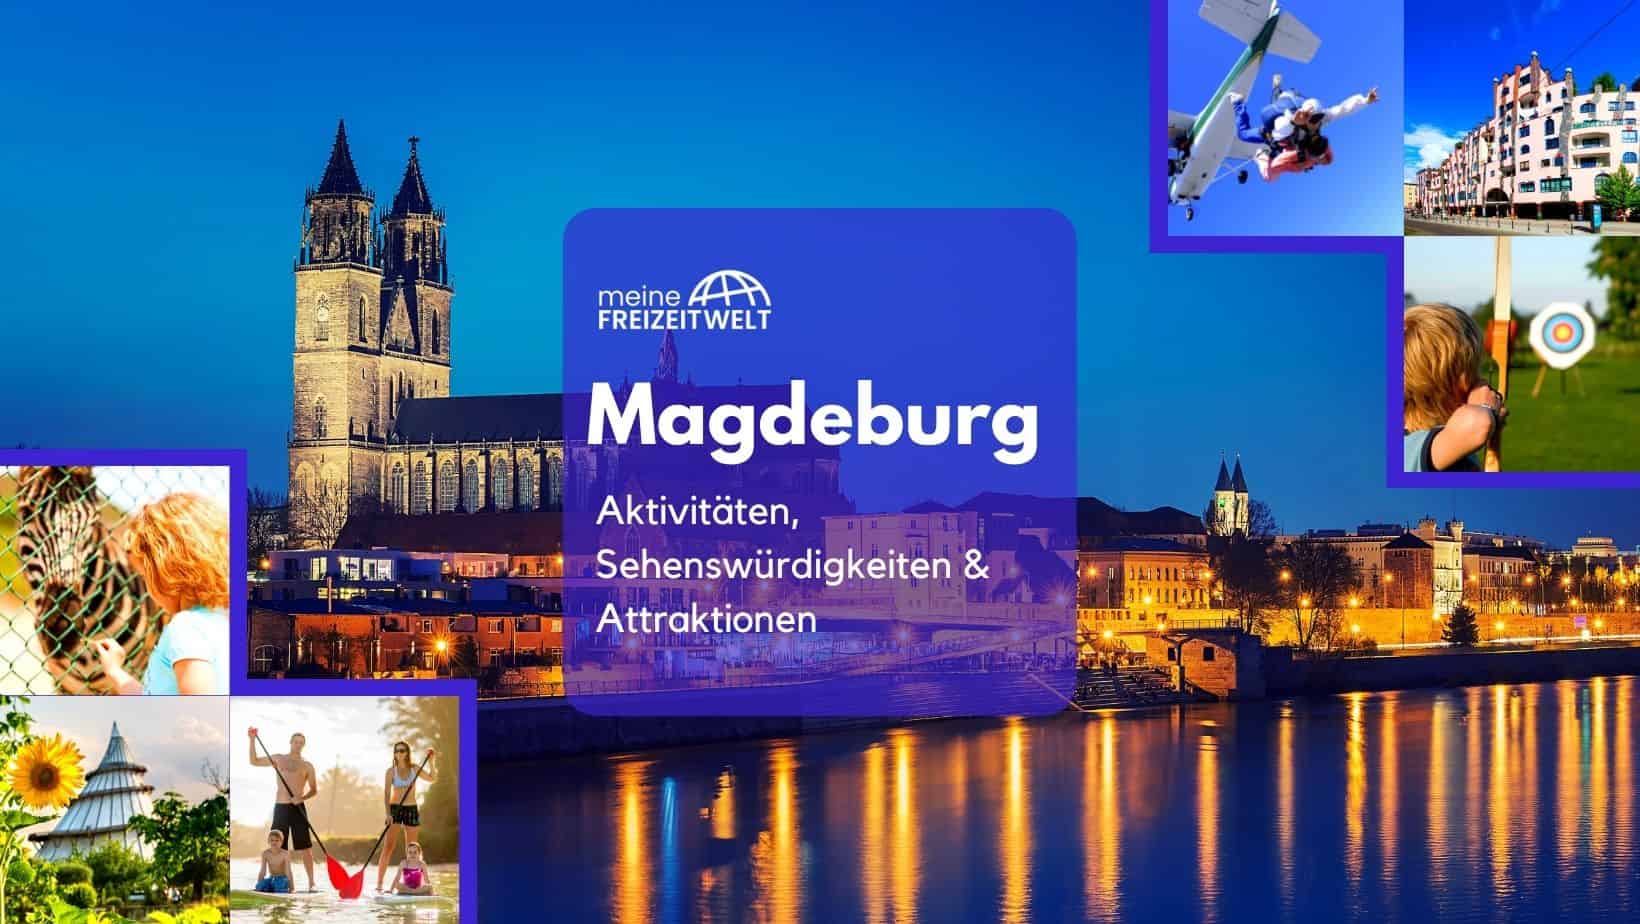 Magdeburg Aktivitäten, Sehenswürdigkeiten & Attraktionen